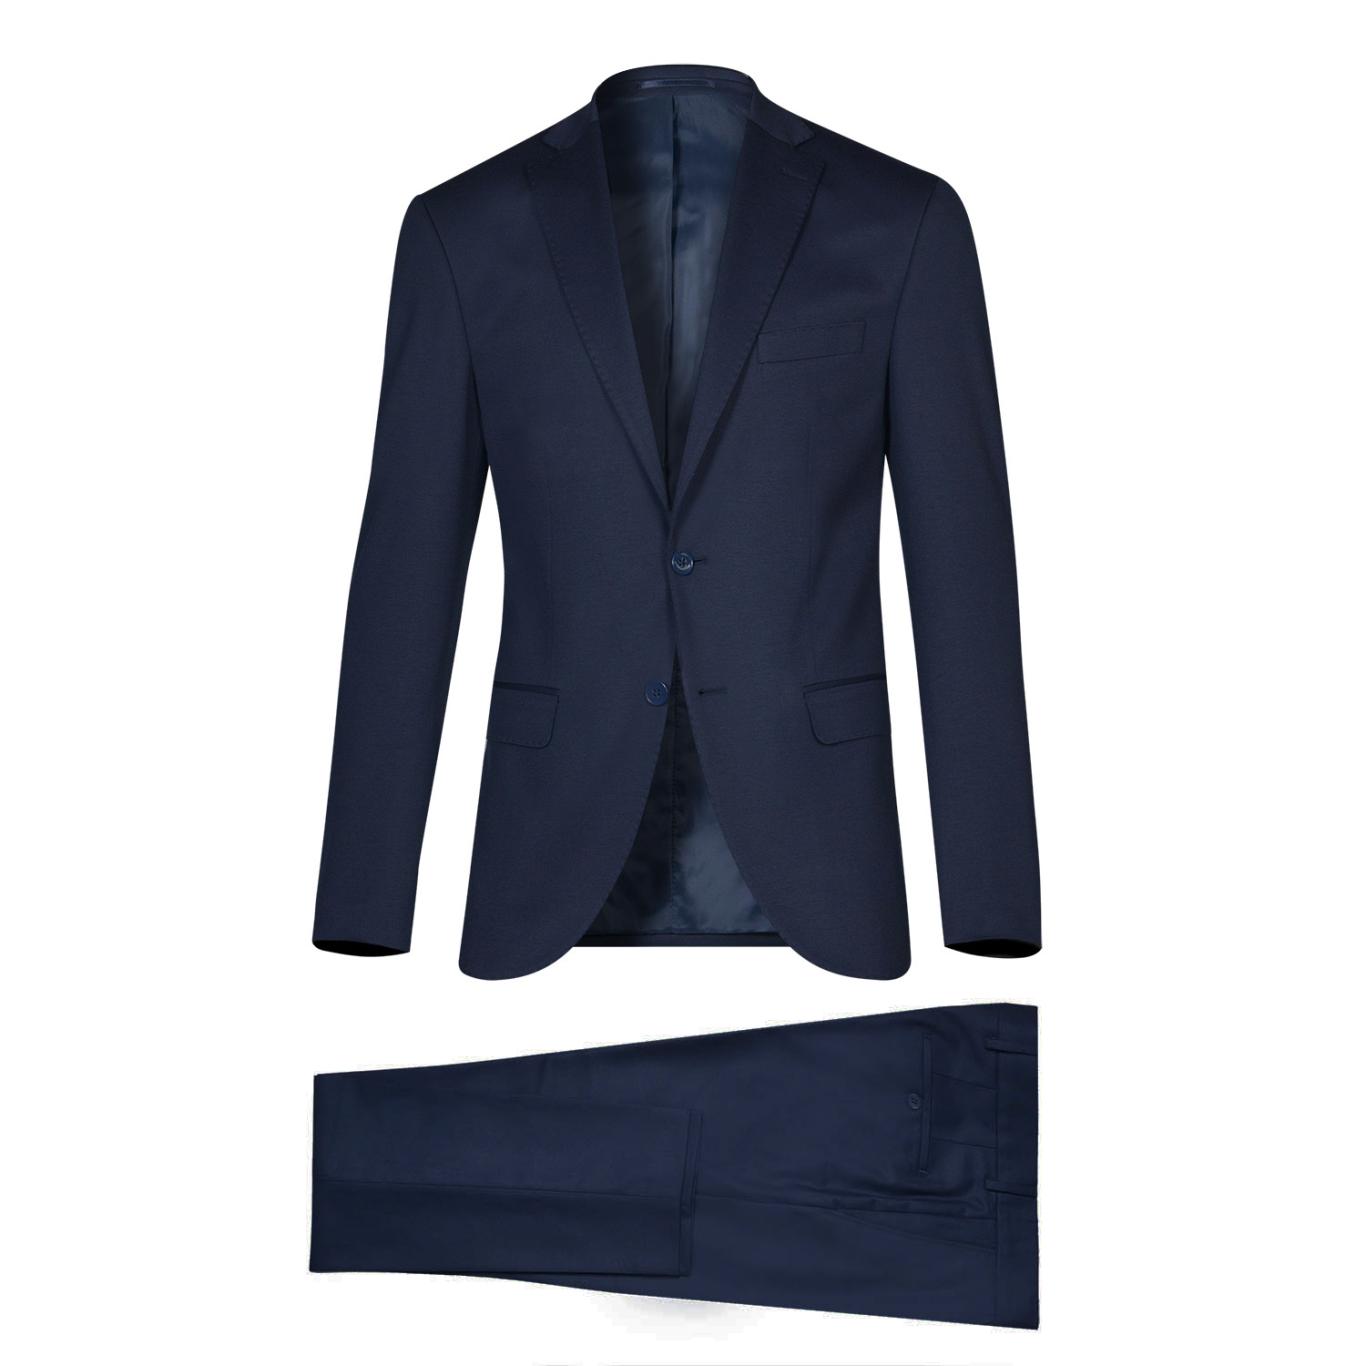 The Lavish Suit - Pellini